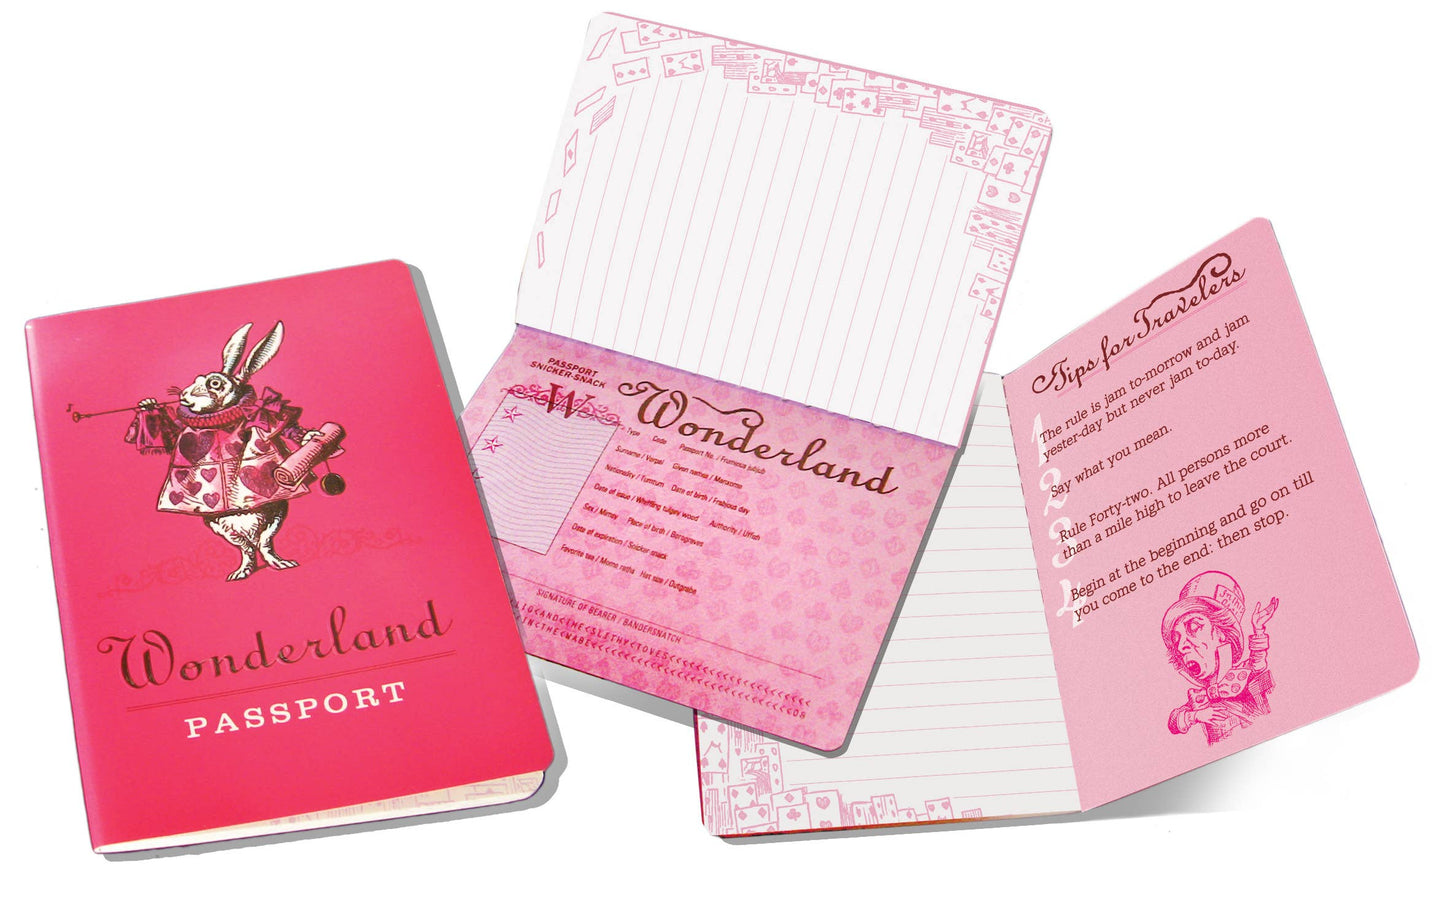 Pocket Notebook; Wonderland Passport